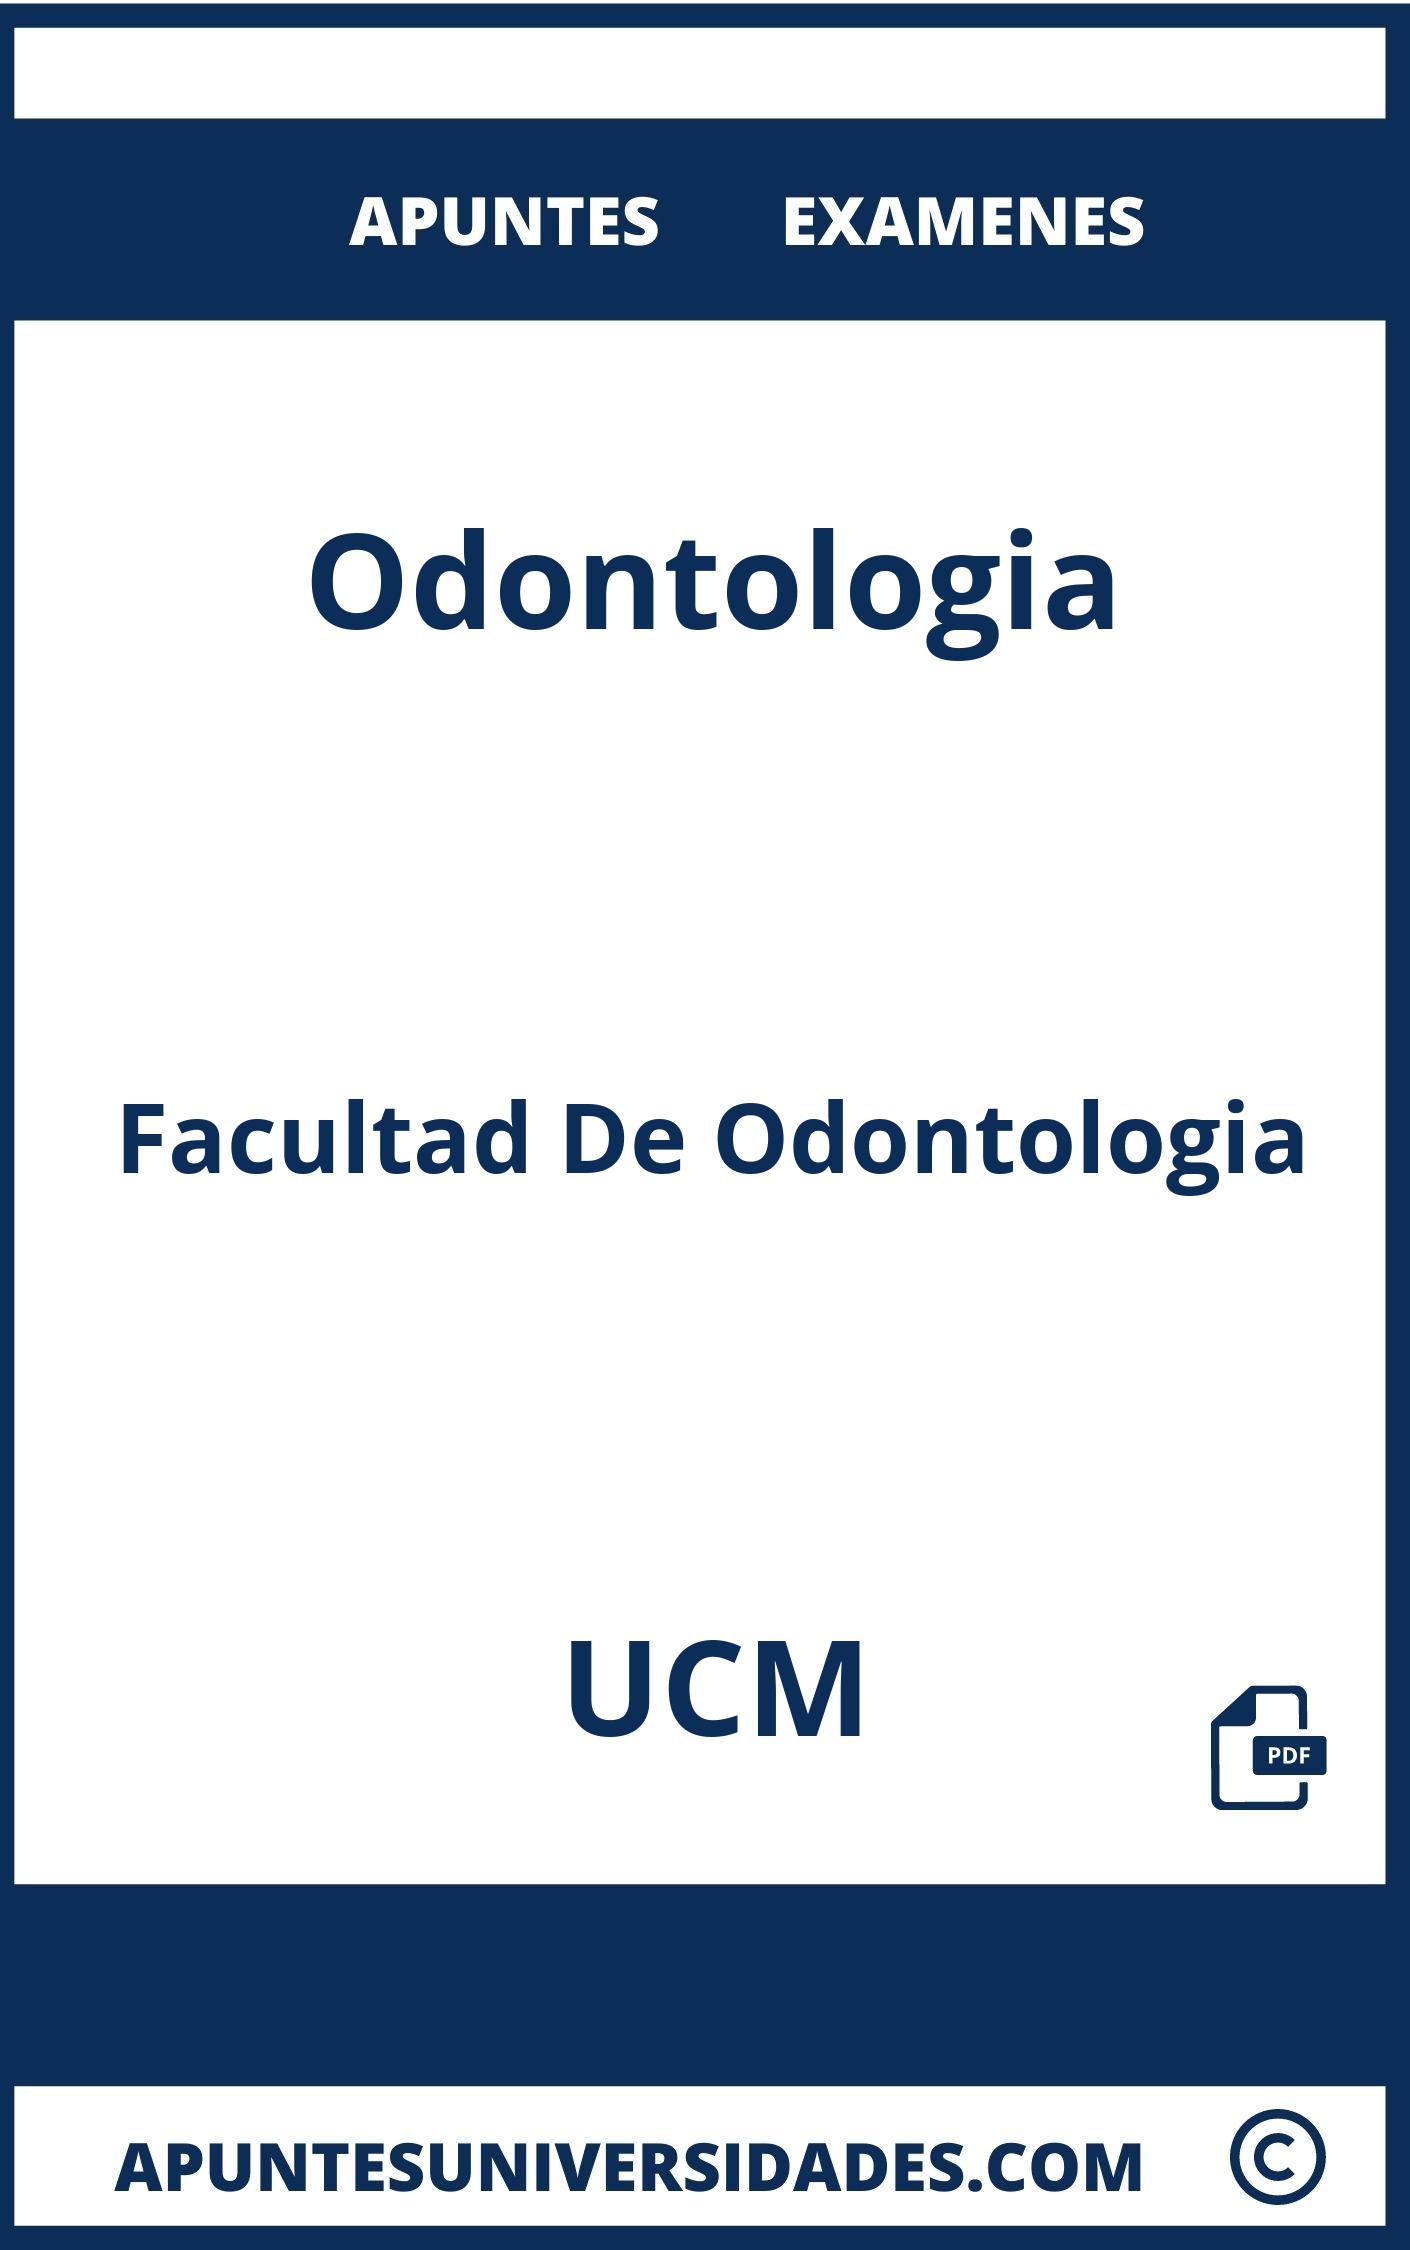 Apuntes y Examenes de Odontologia UCM